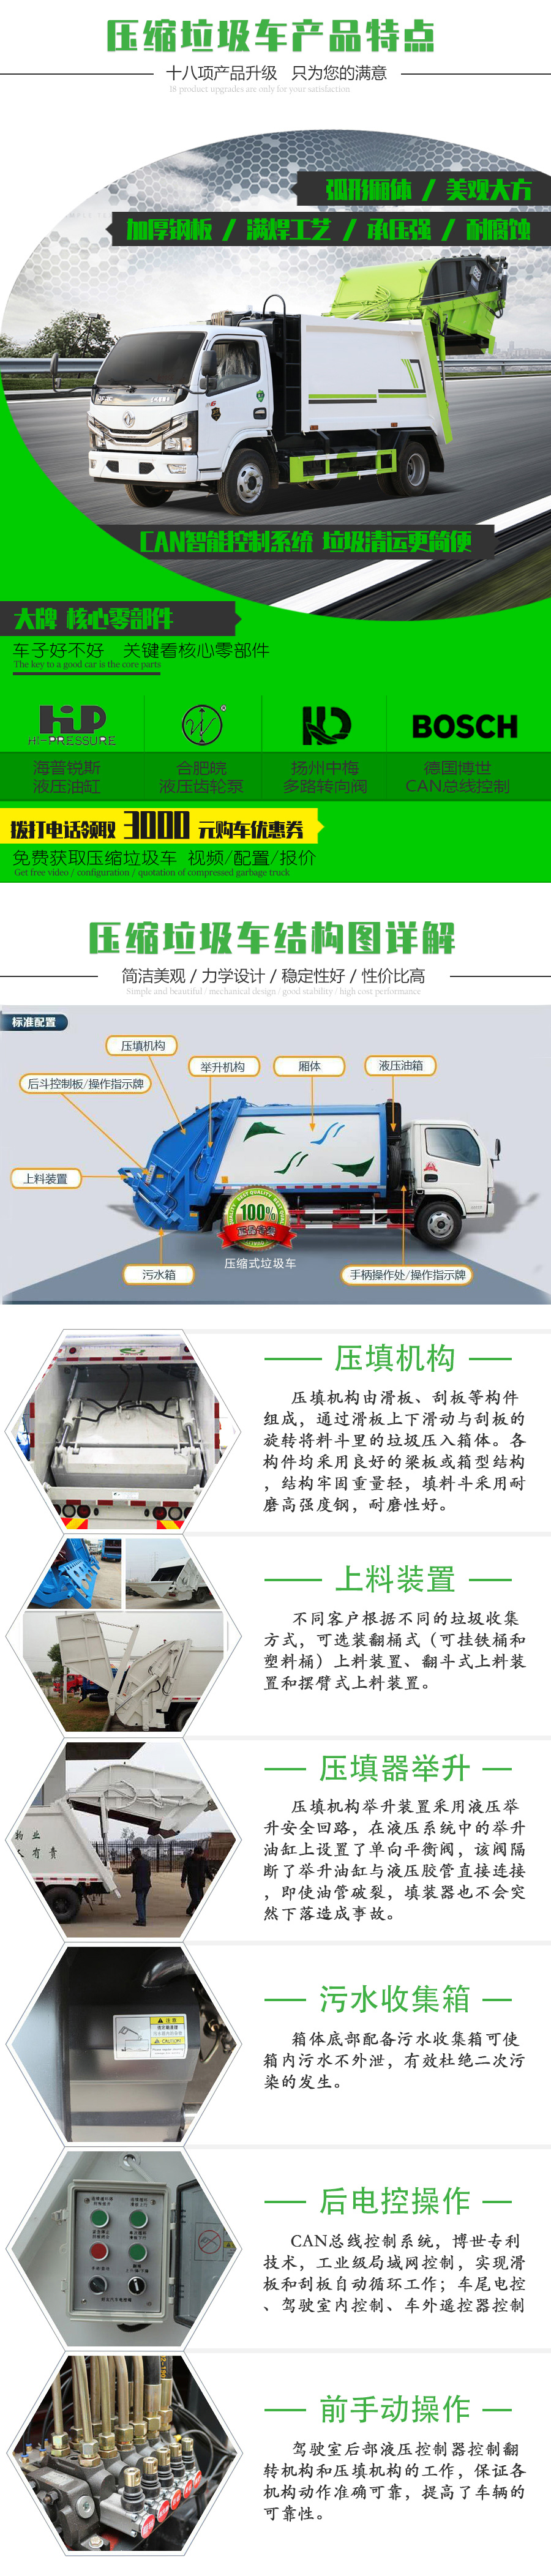 东风牌 国六 7吨压缩式垃圾车